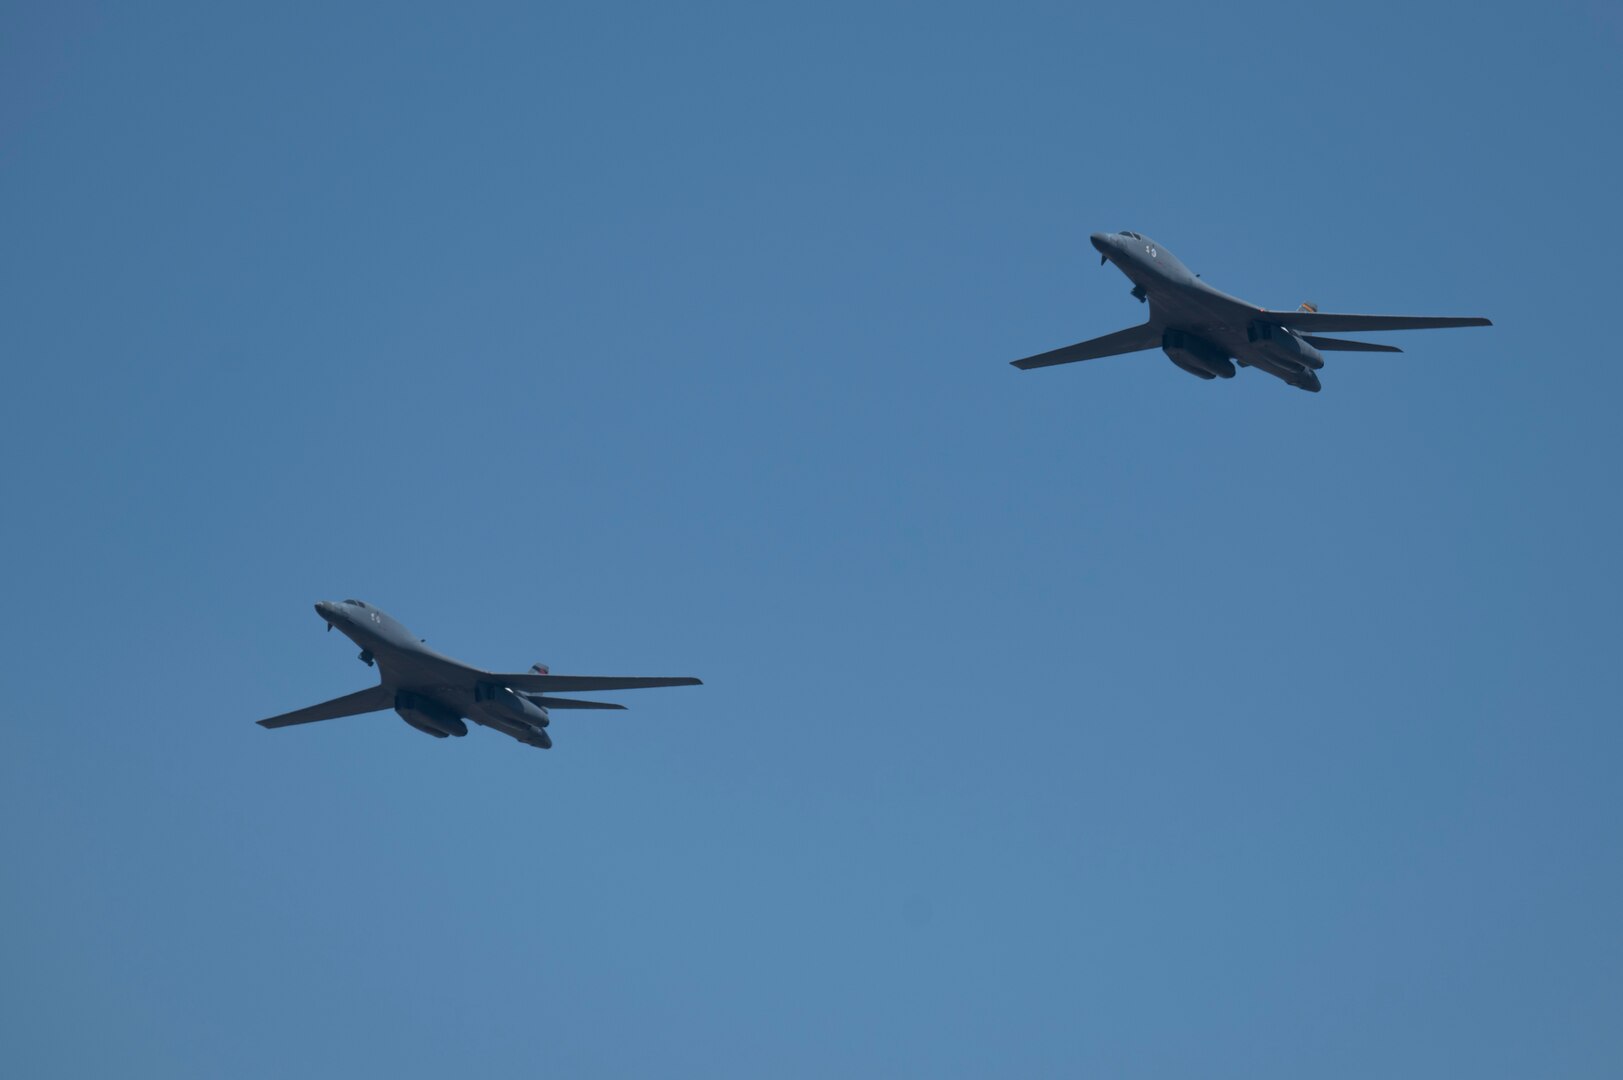 A photo of 2 B-1B Lancers